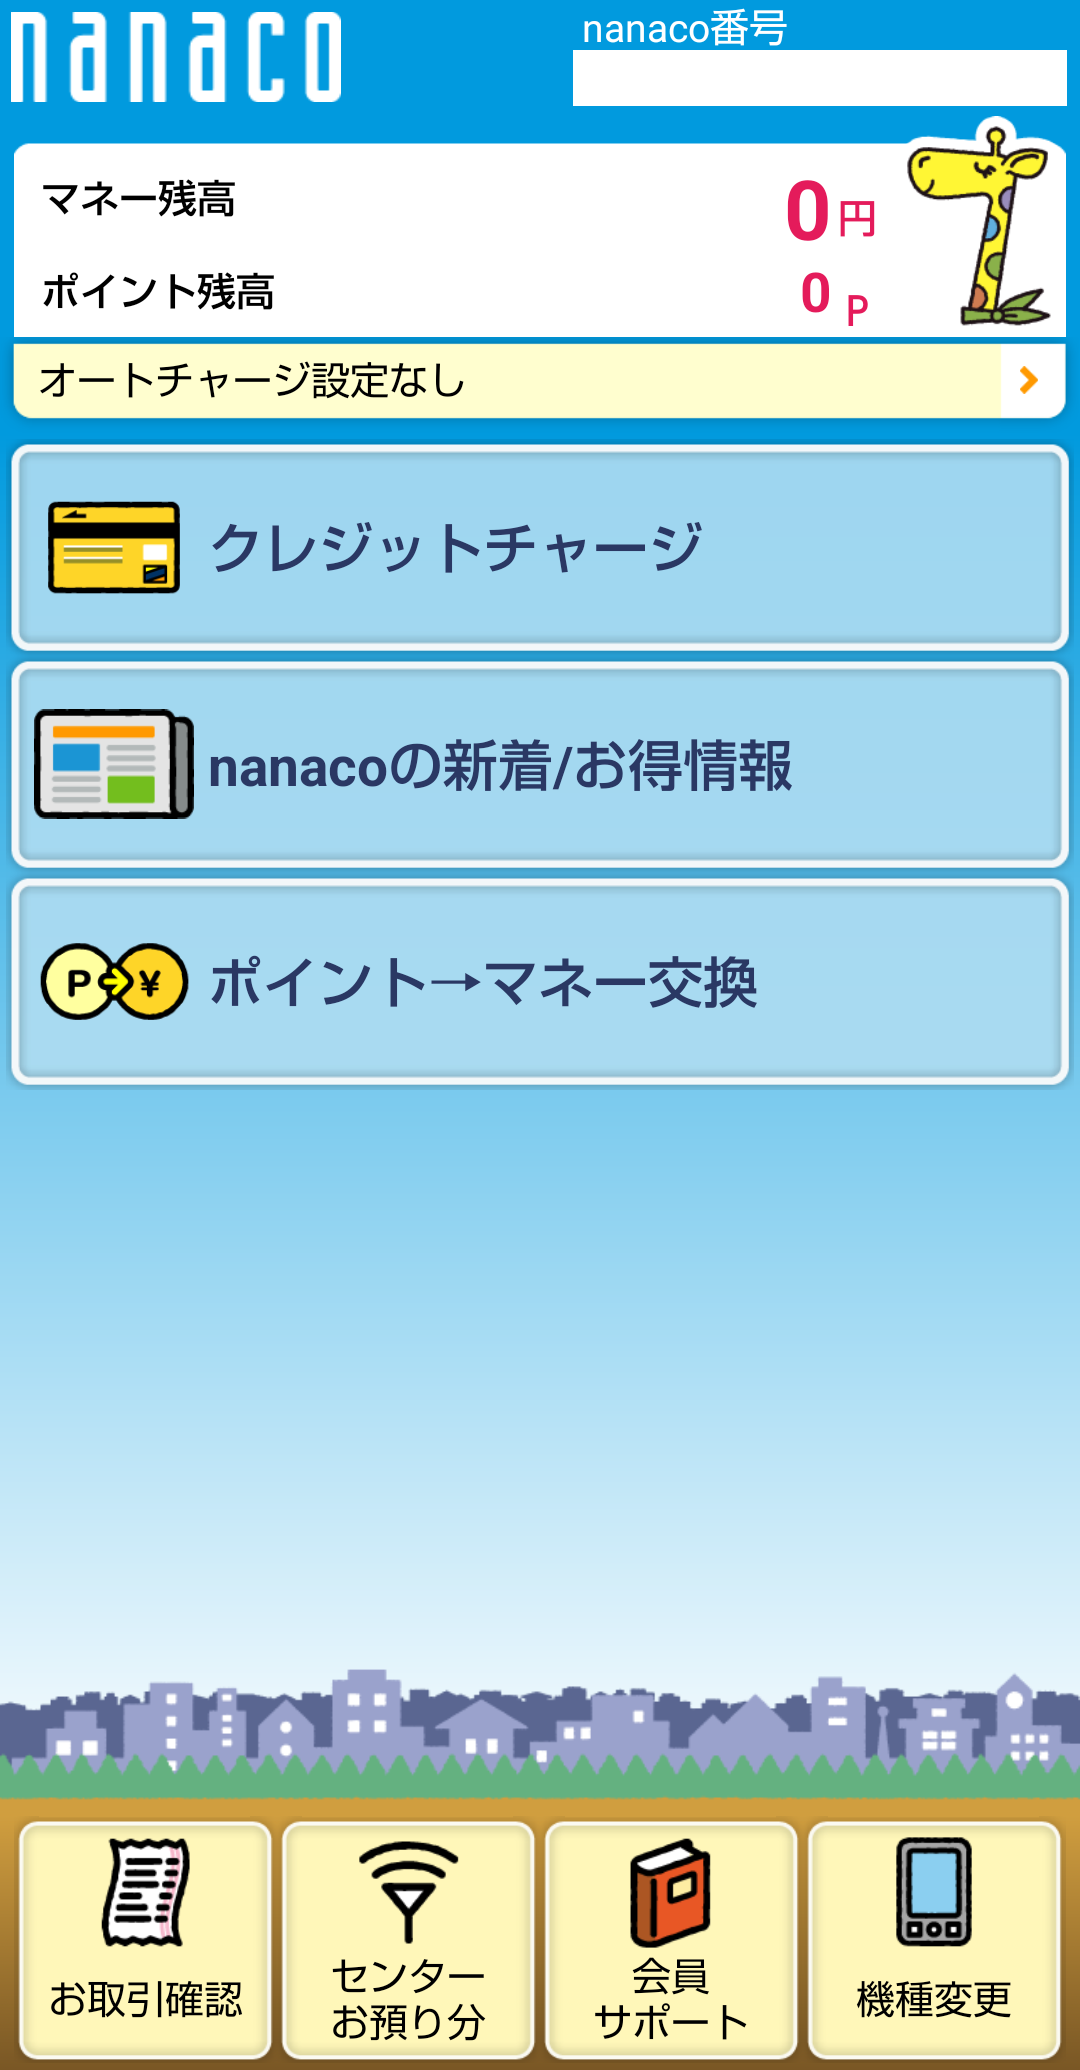 無料発行できるnanacoモバイルの画面